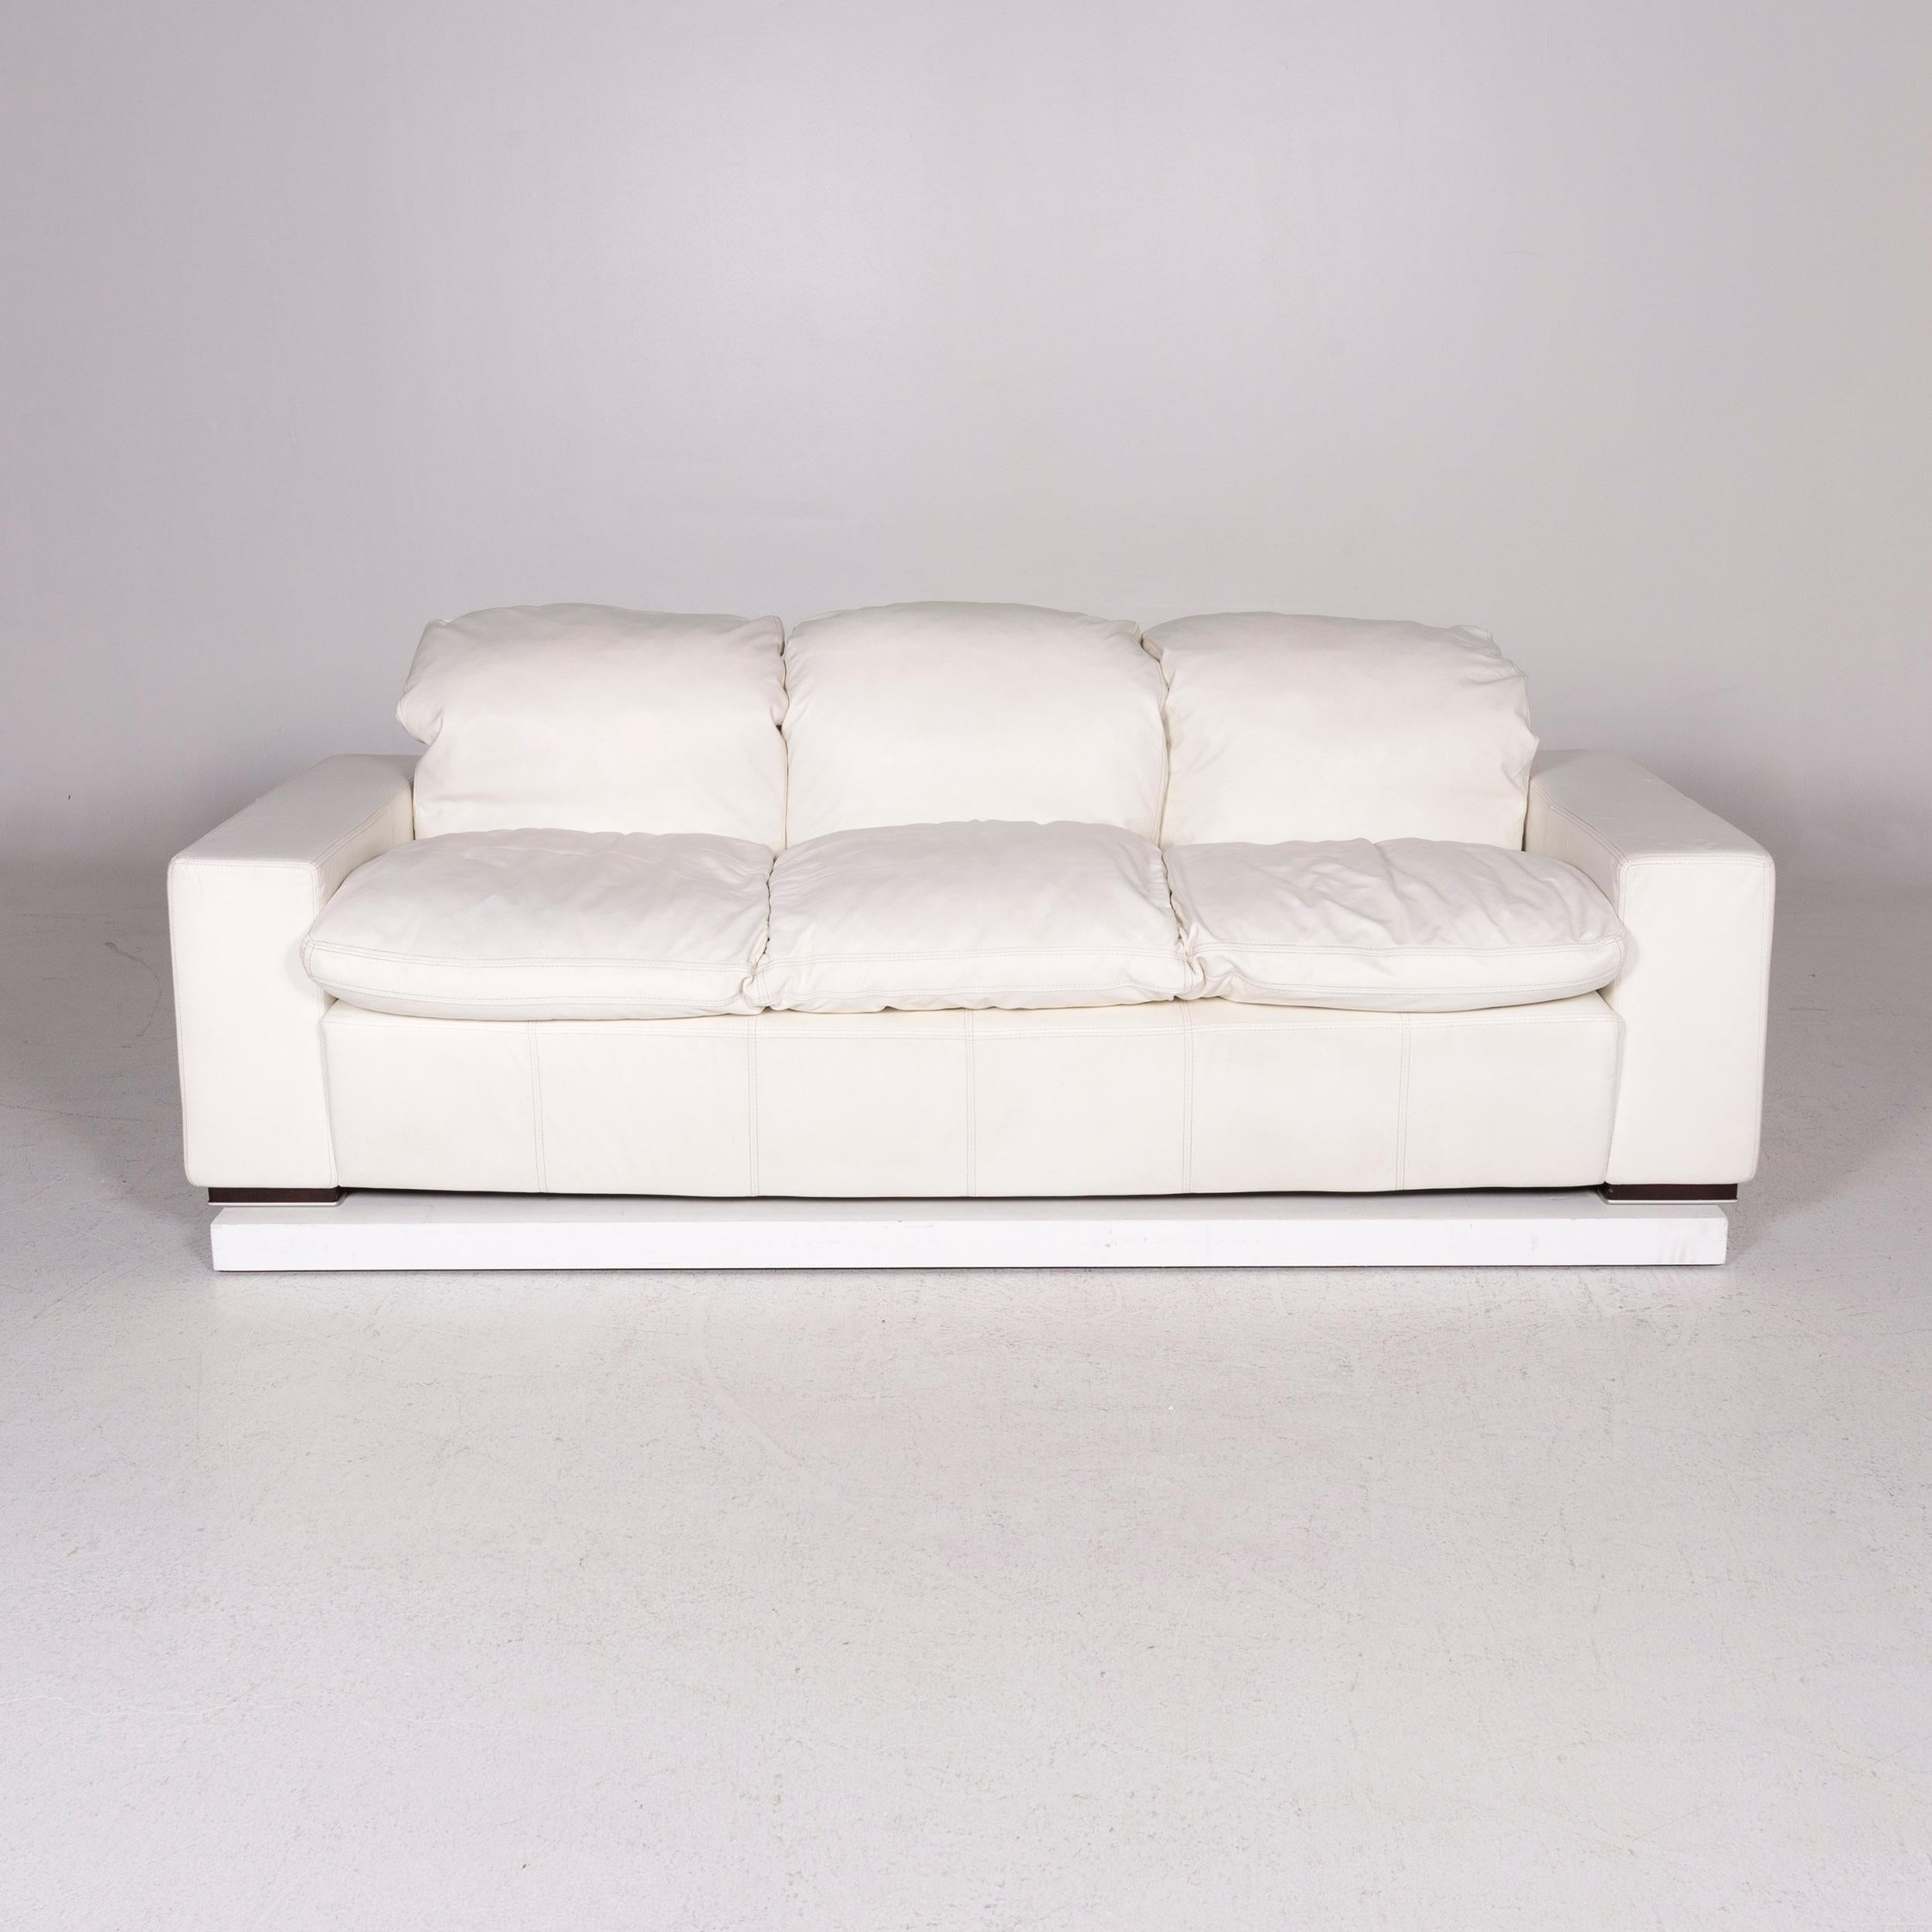 Nieri Leather Sofa Set White 1 Three-Seat 1 Two-Seat 4